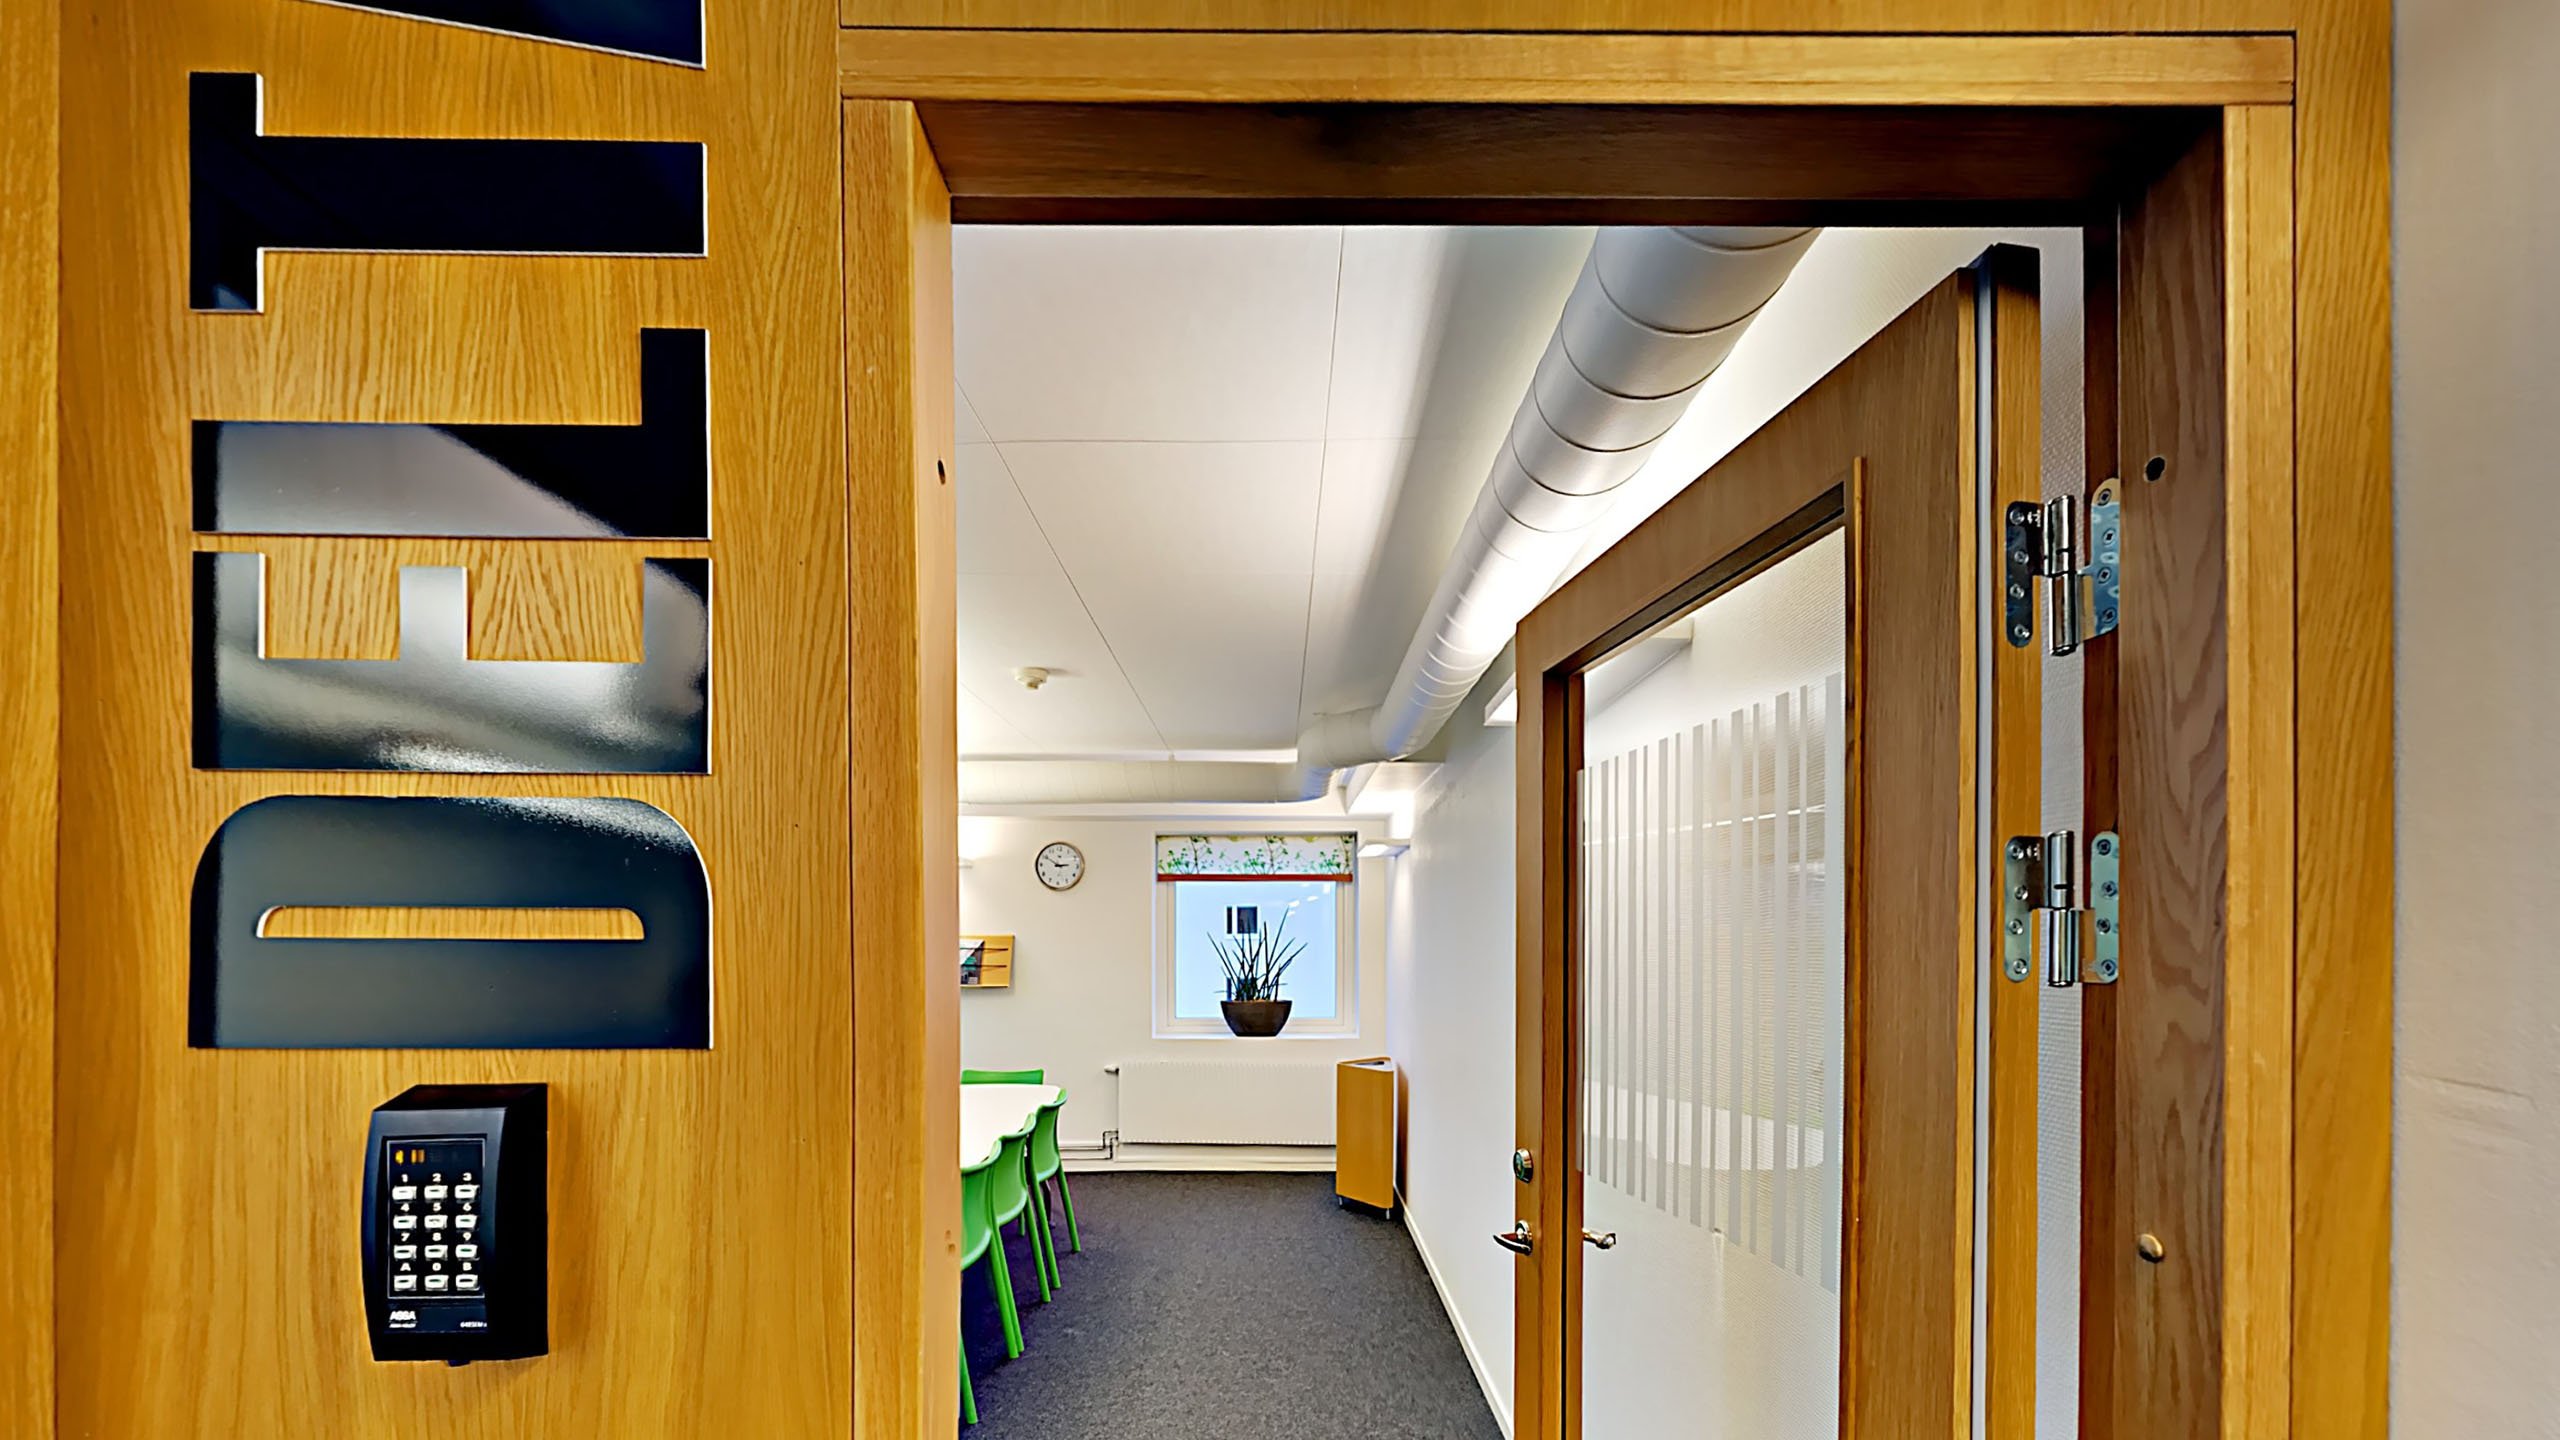 Skolan har använt fina material i inredningen, som exempelvis trä runt entrén till klassrummen.